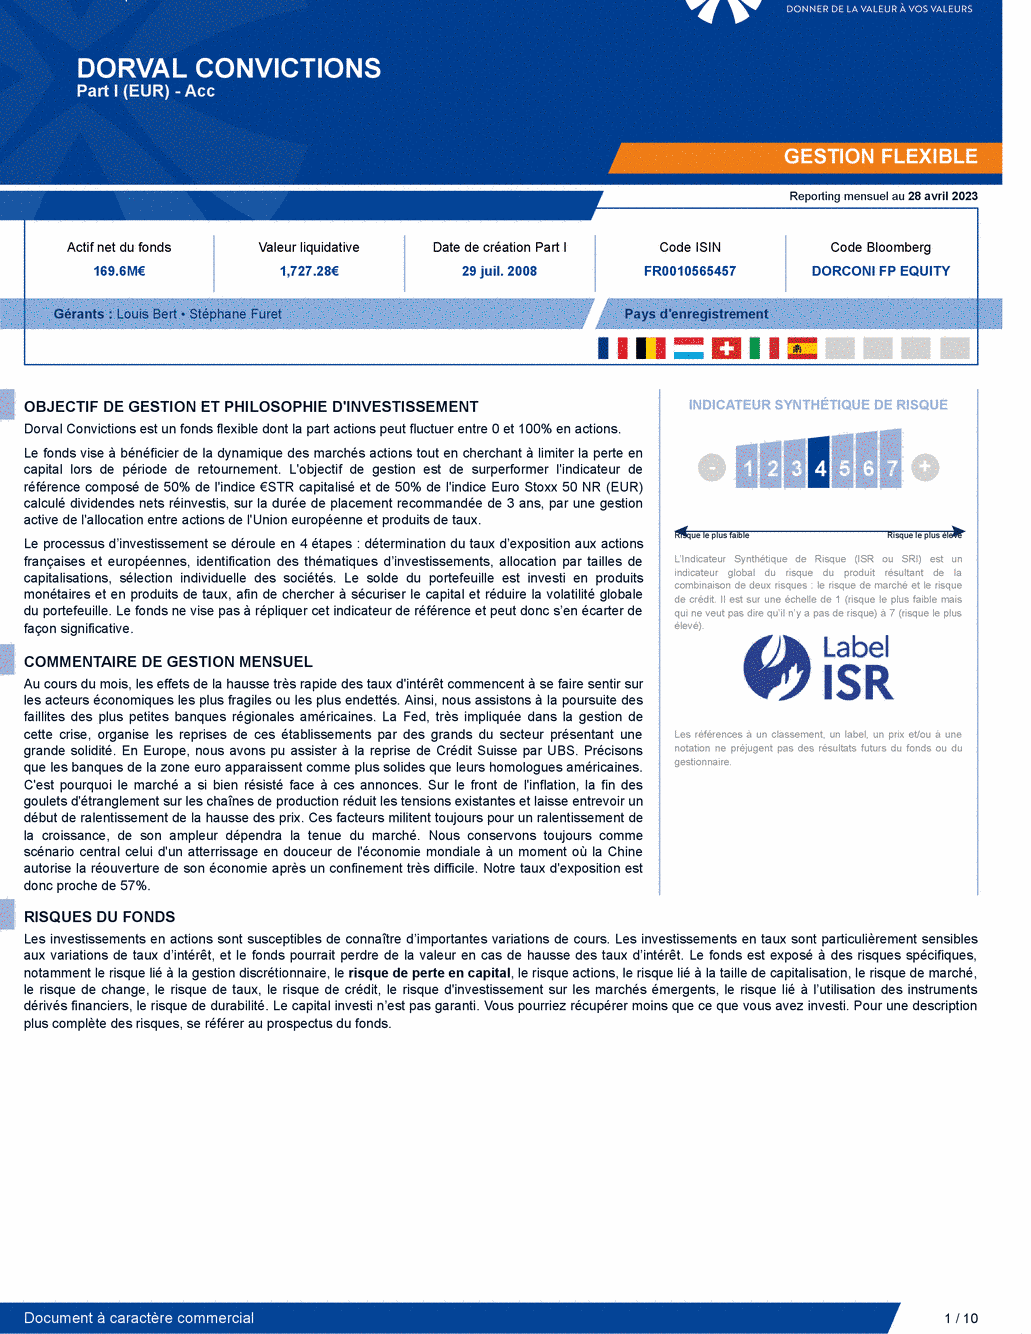 Reporting DORVAL CONVICTIONS I - 28/04/2023 - Français